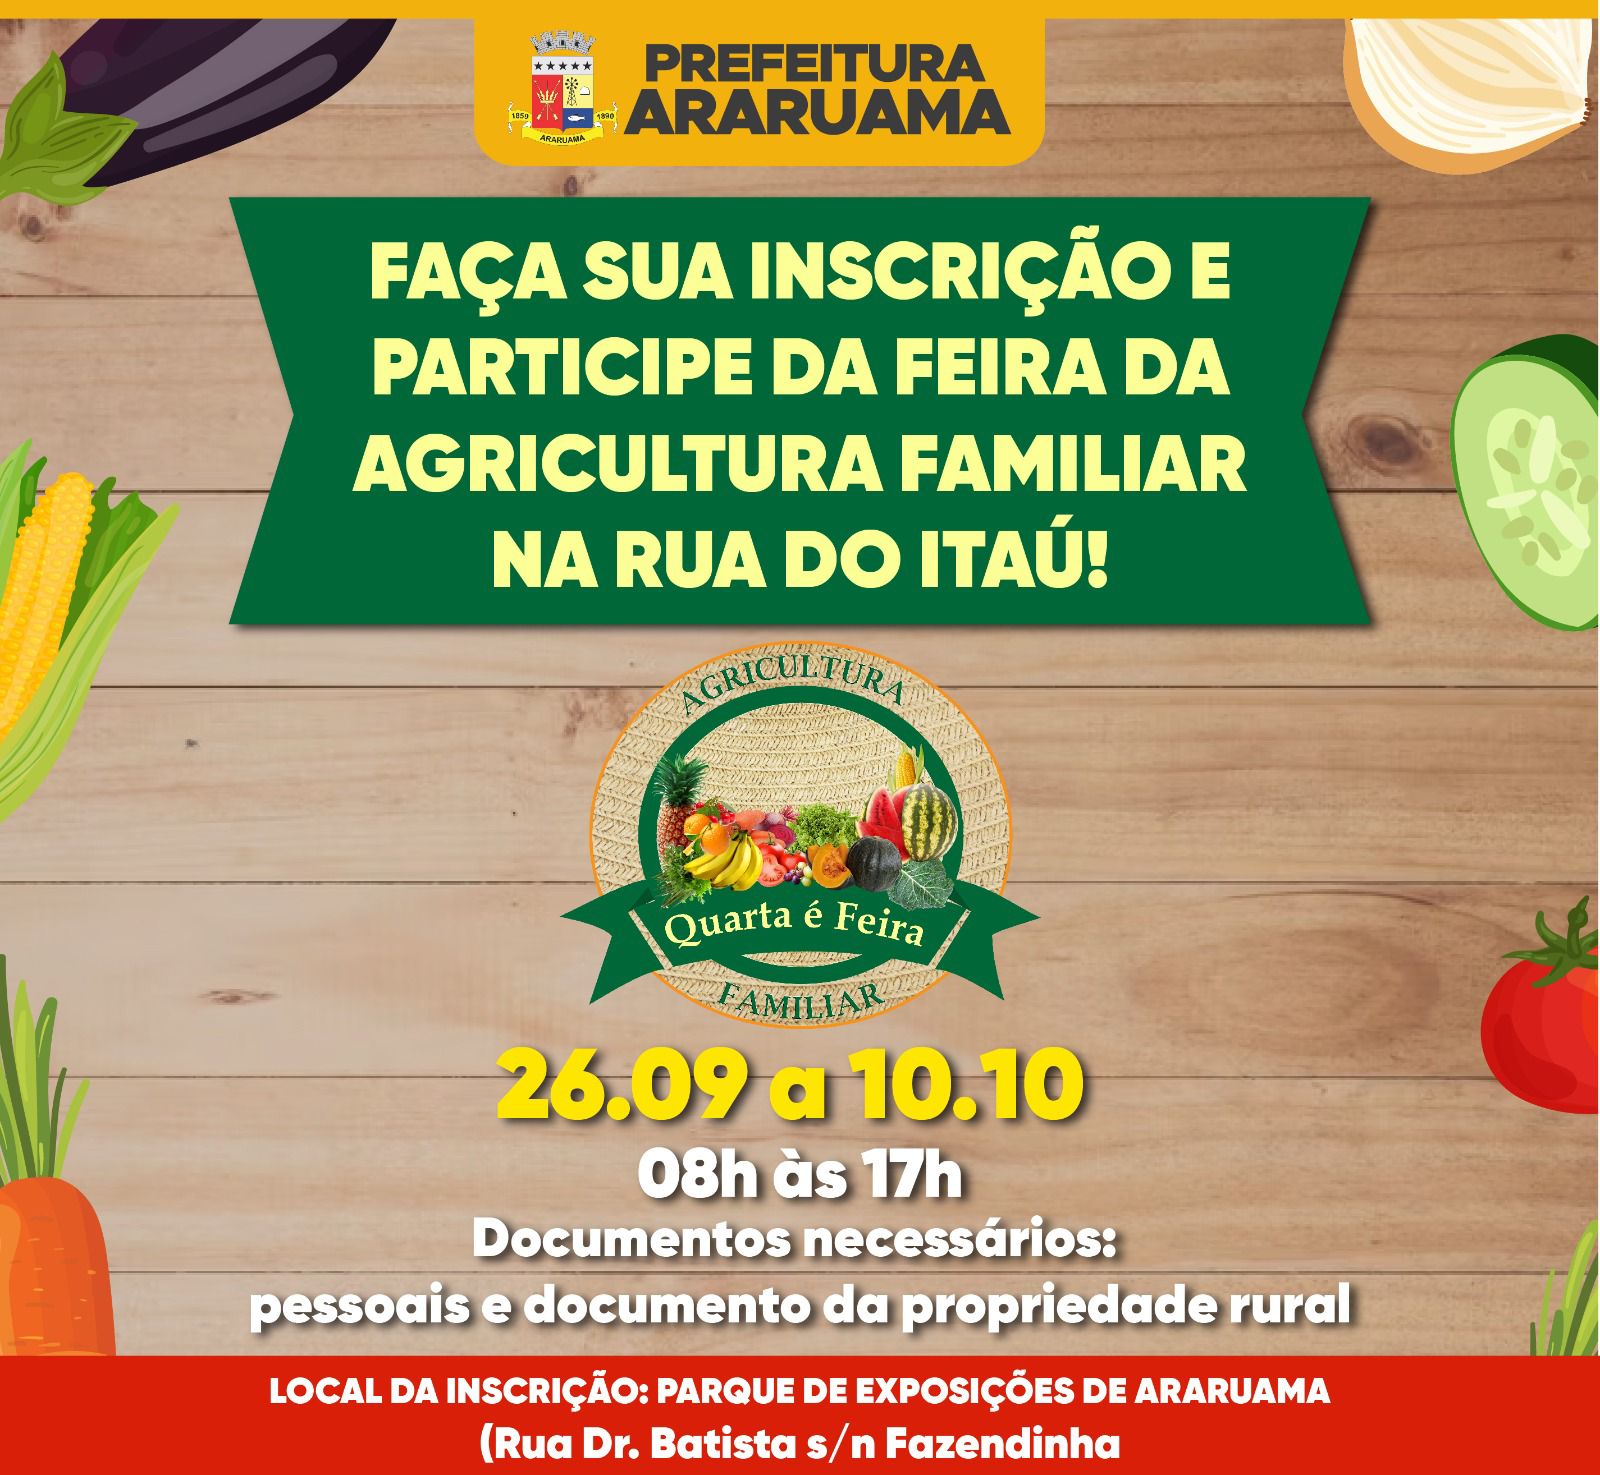 Prefeitura abre inscrições para agricultores que queiram participar da “Feira da Agricultura Familiar”